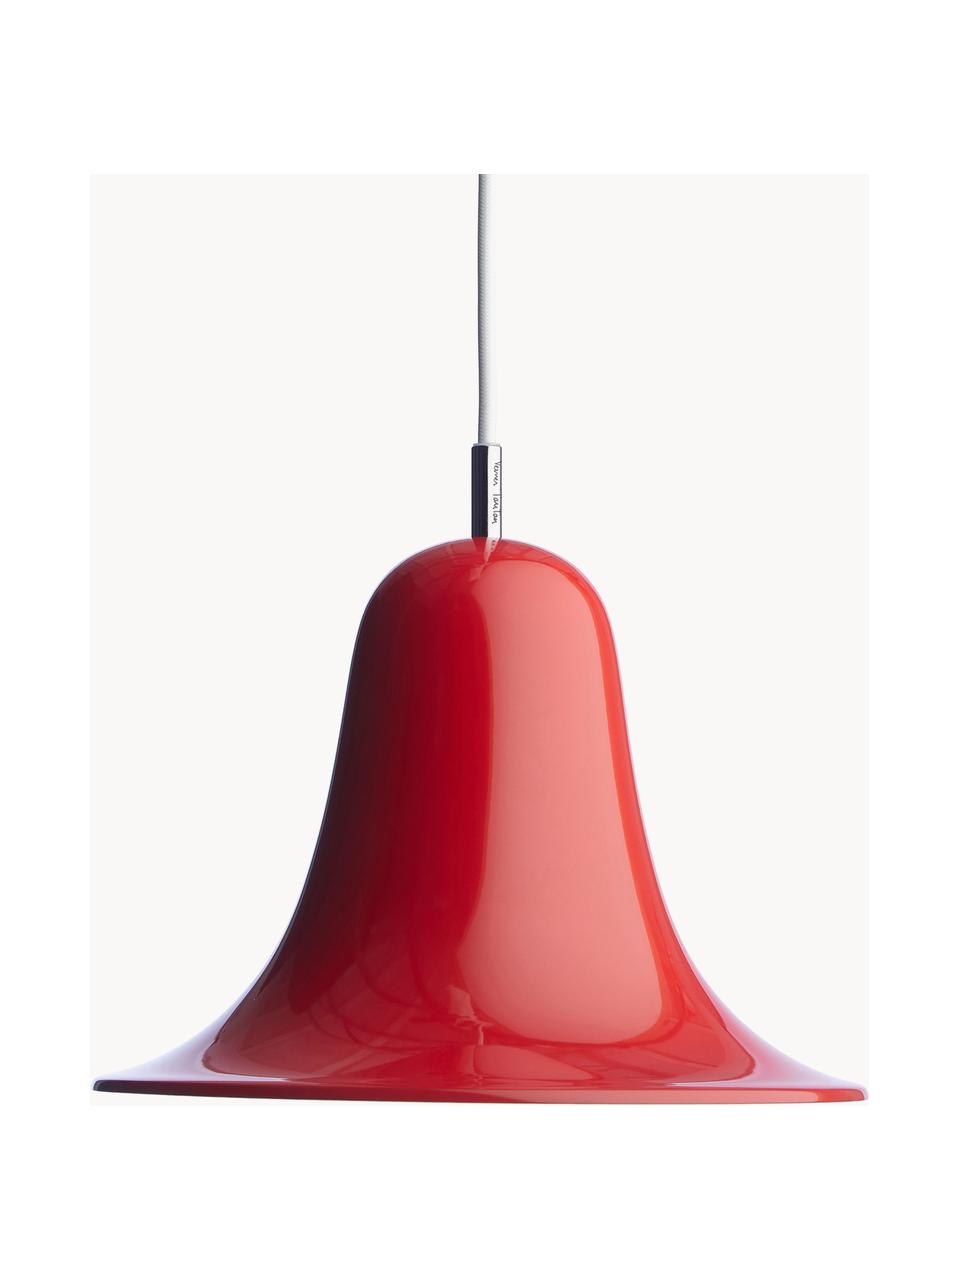 Kleine Pendelleuchte Pantop, Lampenschirm: Metall, beschichtet, Rot, Ø 23 x H 17 cm